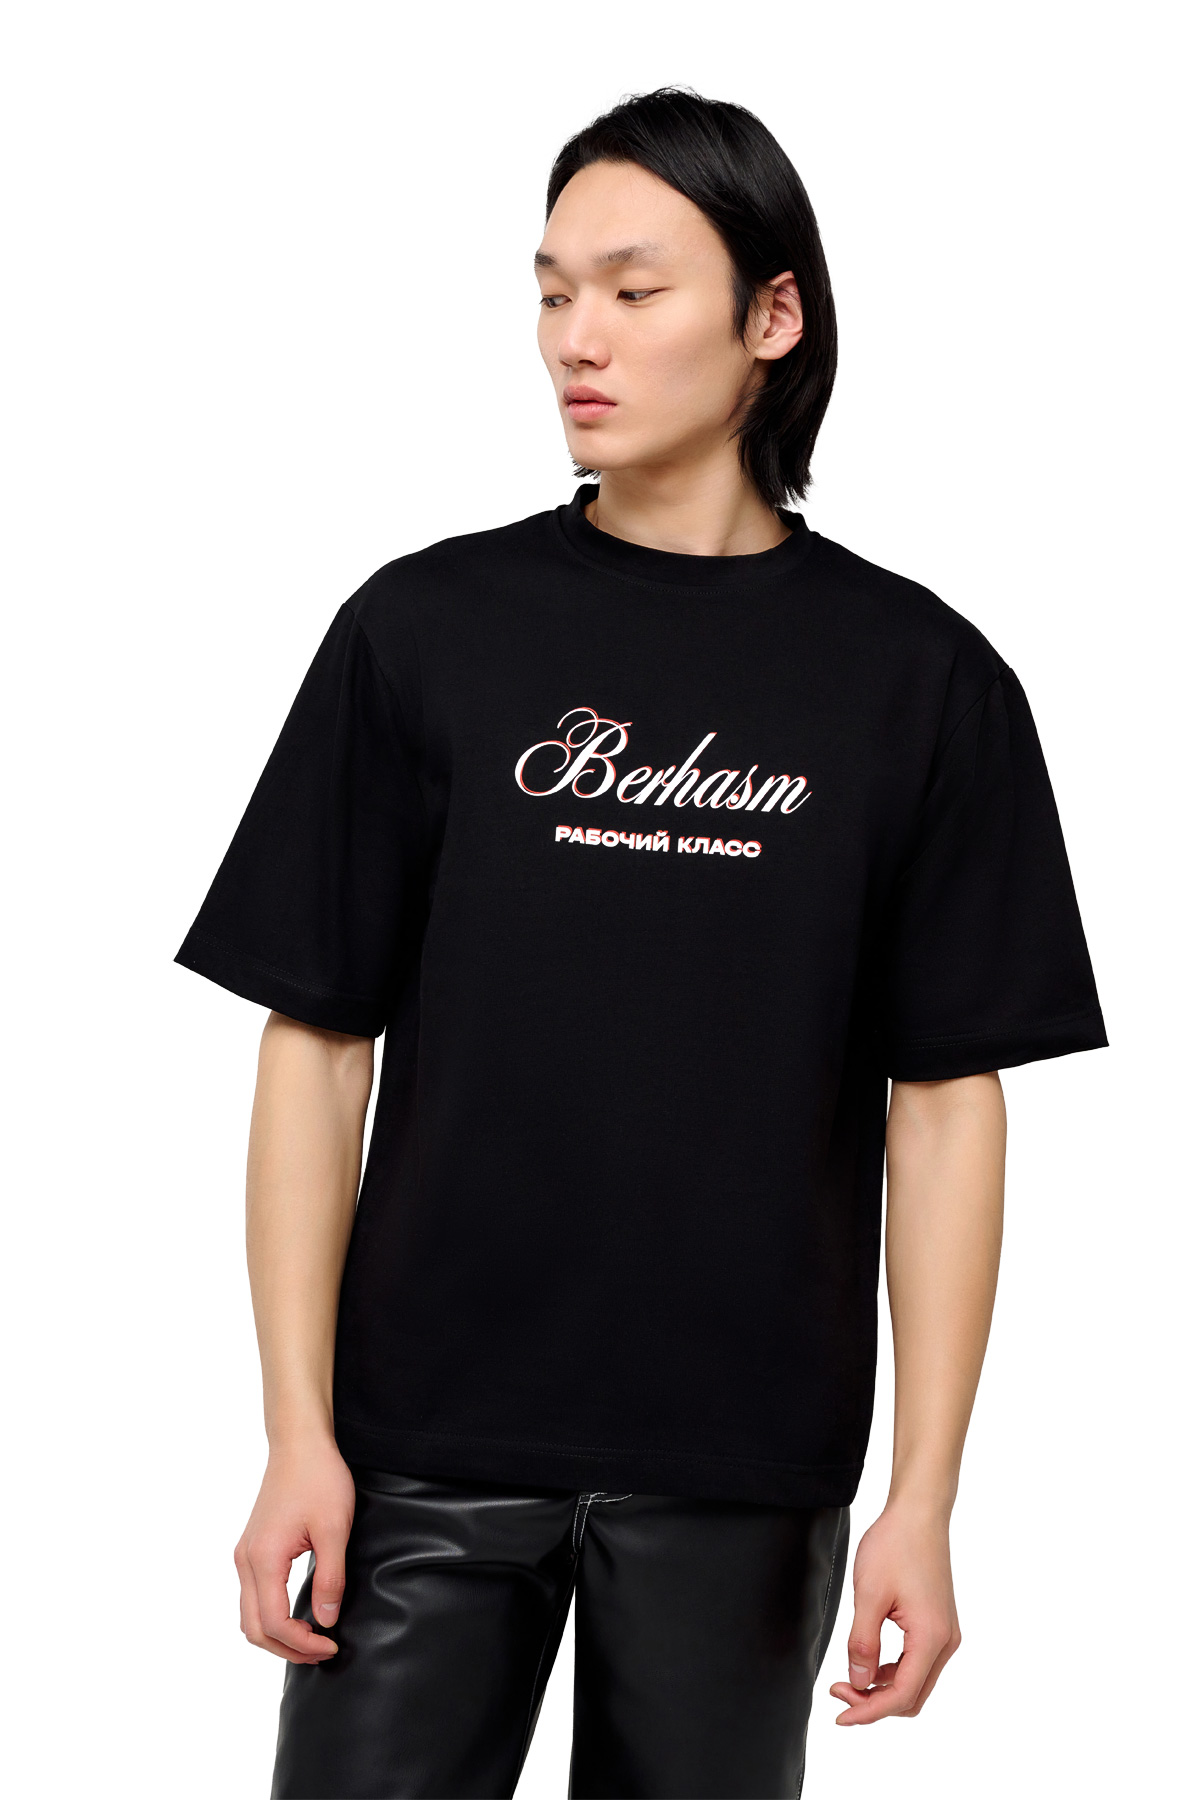 Berhasm working class T-Shirt